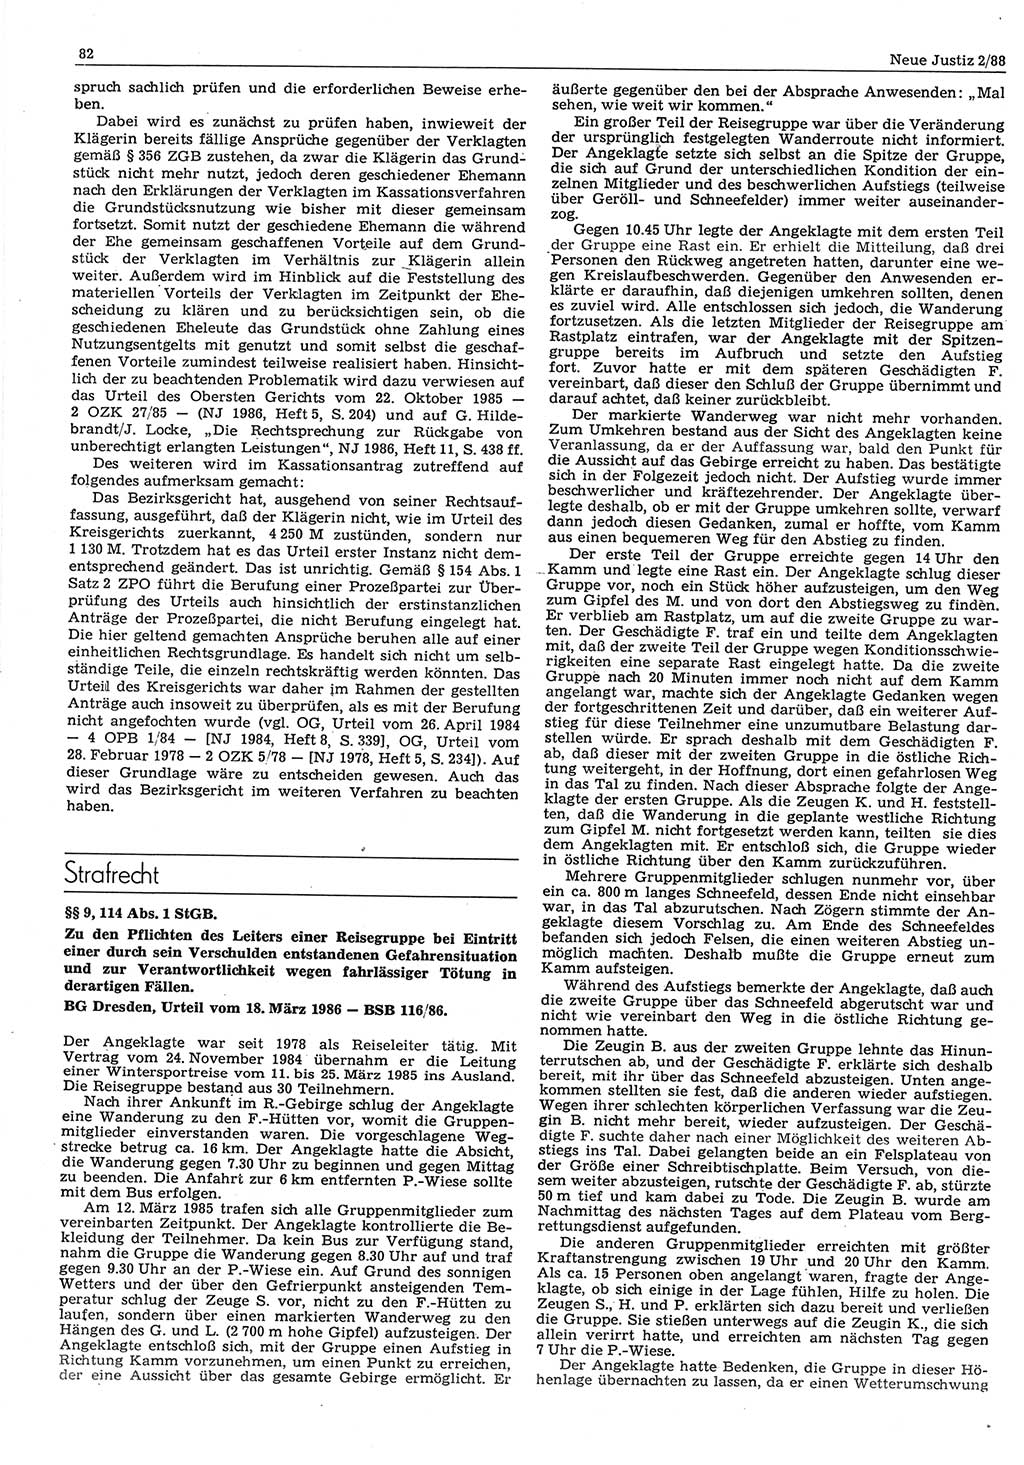 Neue Justiz (NJ), Zeitschrift für sozialistisches Recht und Gesetzlichkeit [Deutsche Demokratische Republik (DDR)], 42. Jahrgang 1988, Seite 82 (NJ DDR 1988, S. 82)